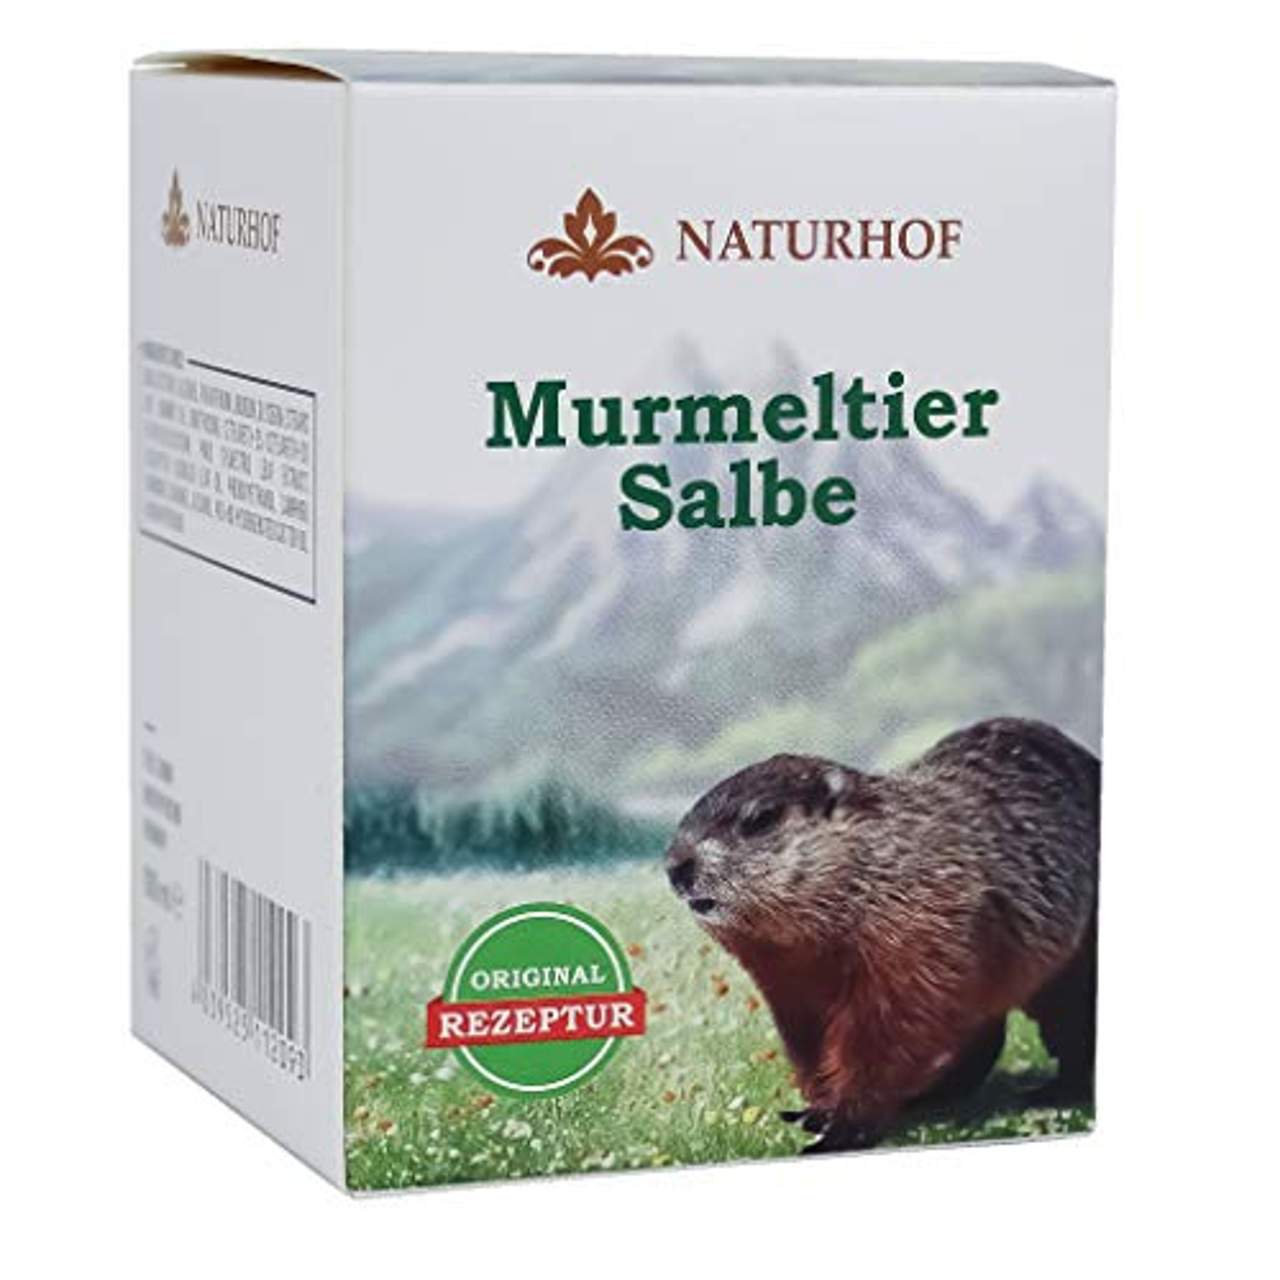 Murmeltier Salbe 100 ml Naturhof Murmeltieröl Pflegend mild